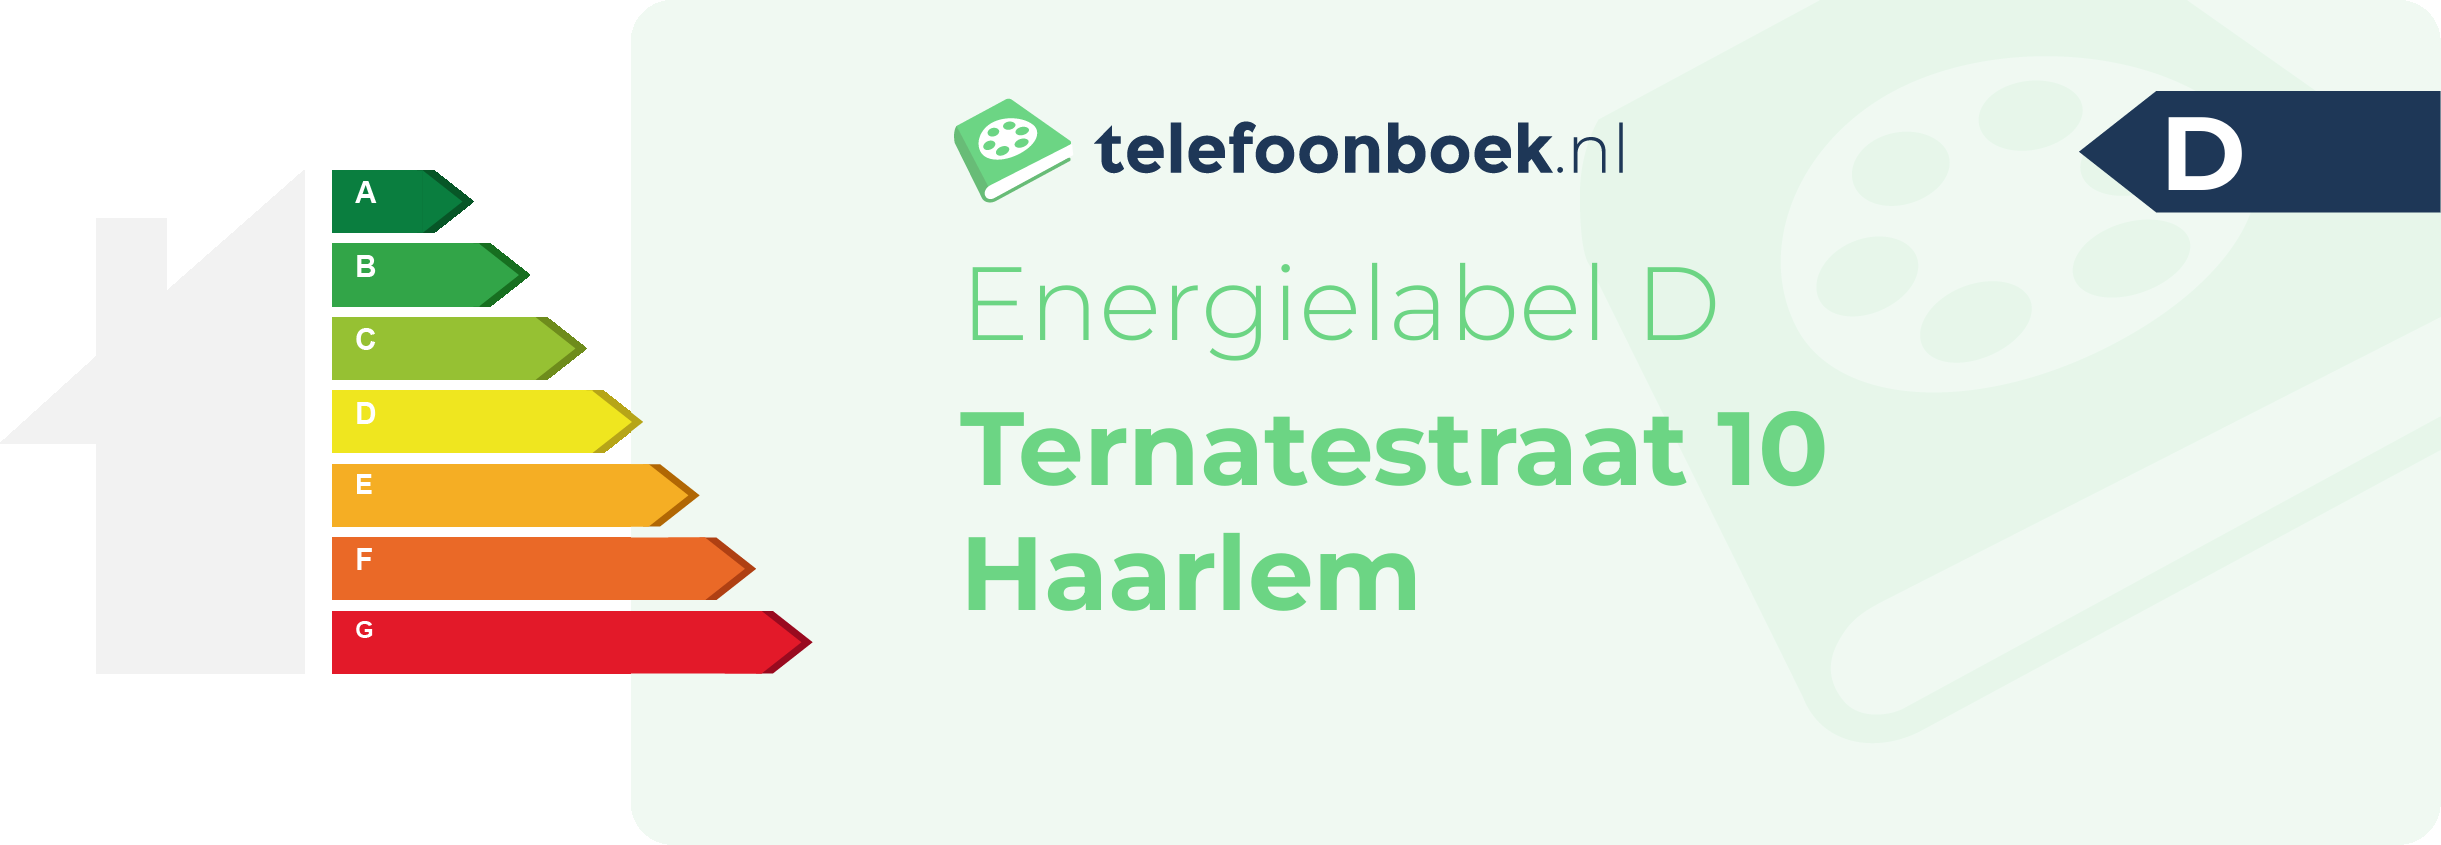 Energielabel Ternatestraat 10 Haarlem